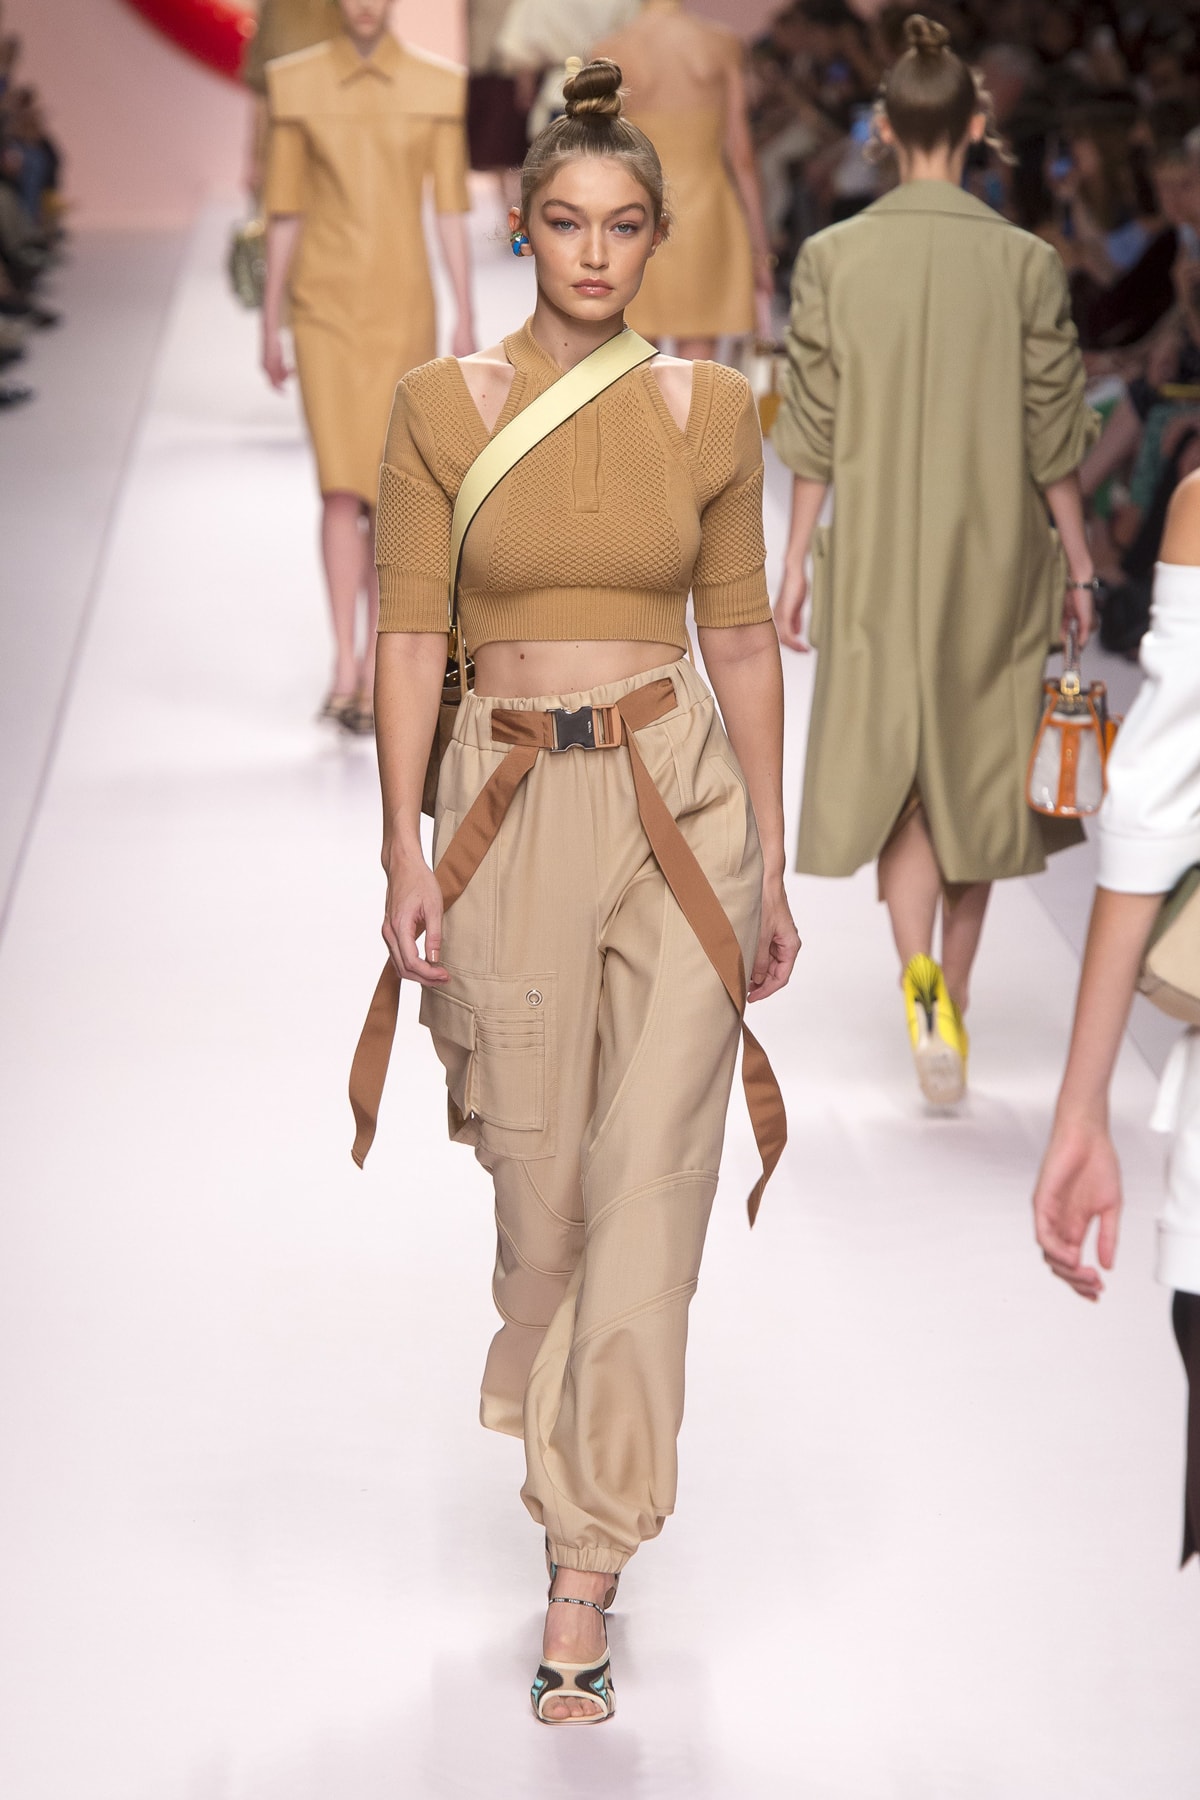 Fendi Karl Lagerfeld Spring Summer 2019 Milan Fashion Week Show Collection Gigi Hadid Crop Top Tan Pants Khaki